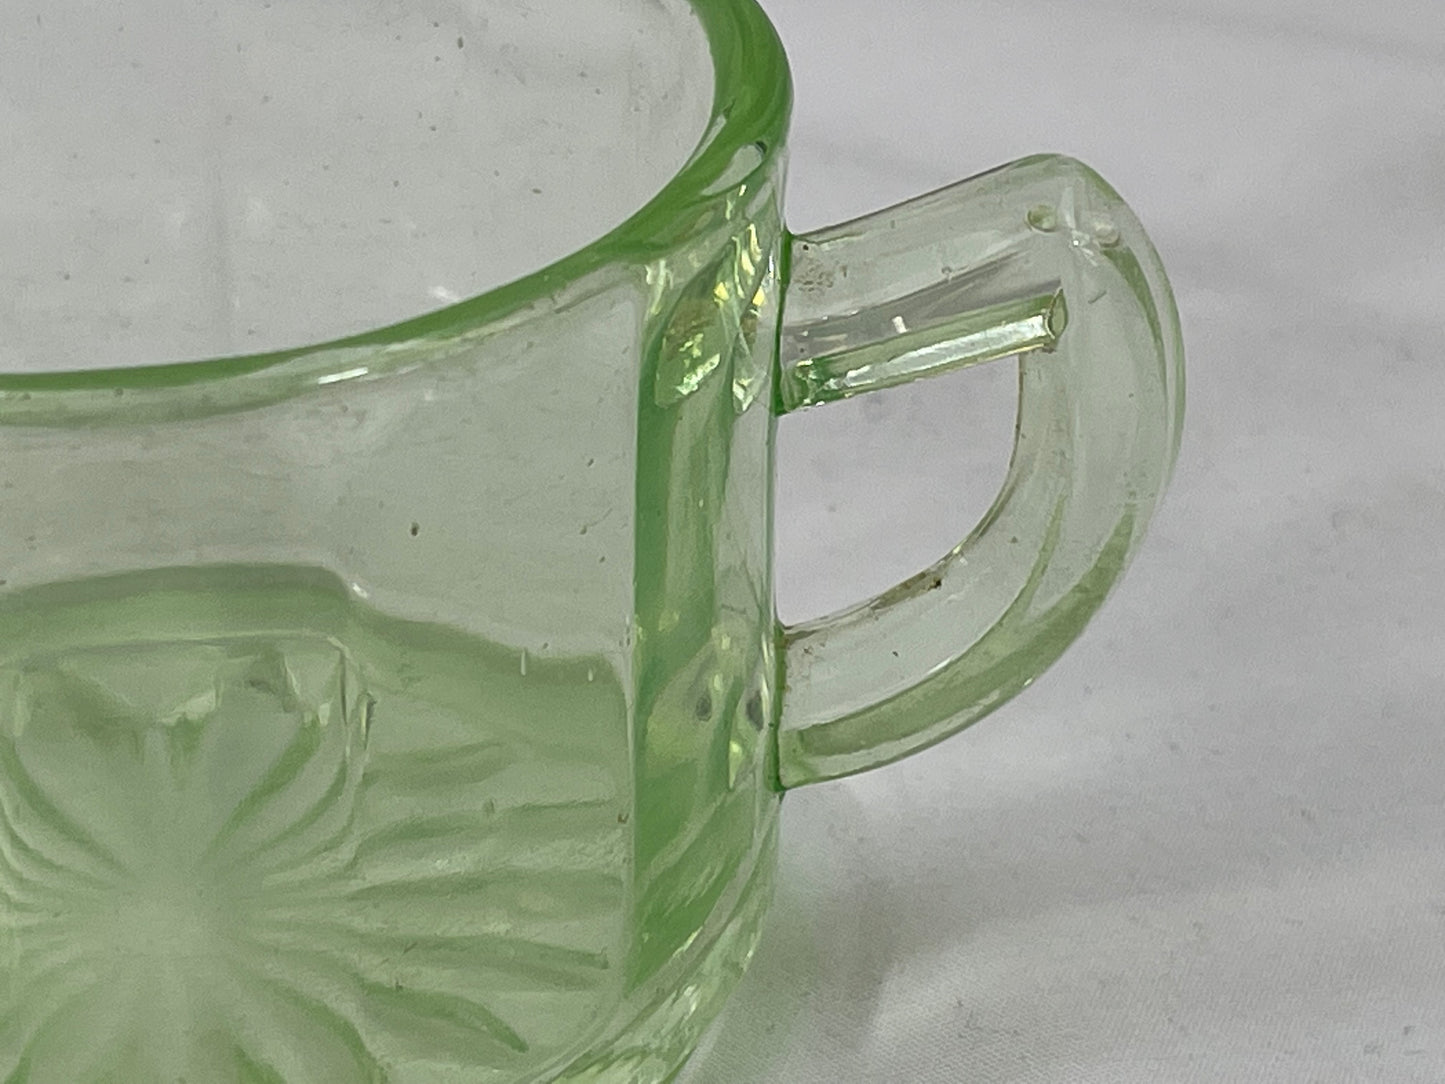 Uranium Glass Sugar Bowl